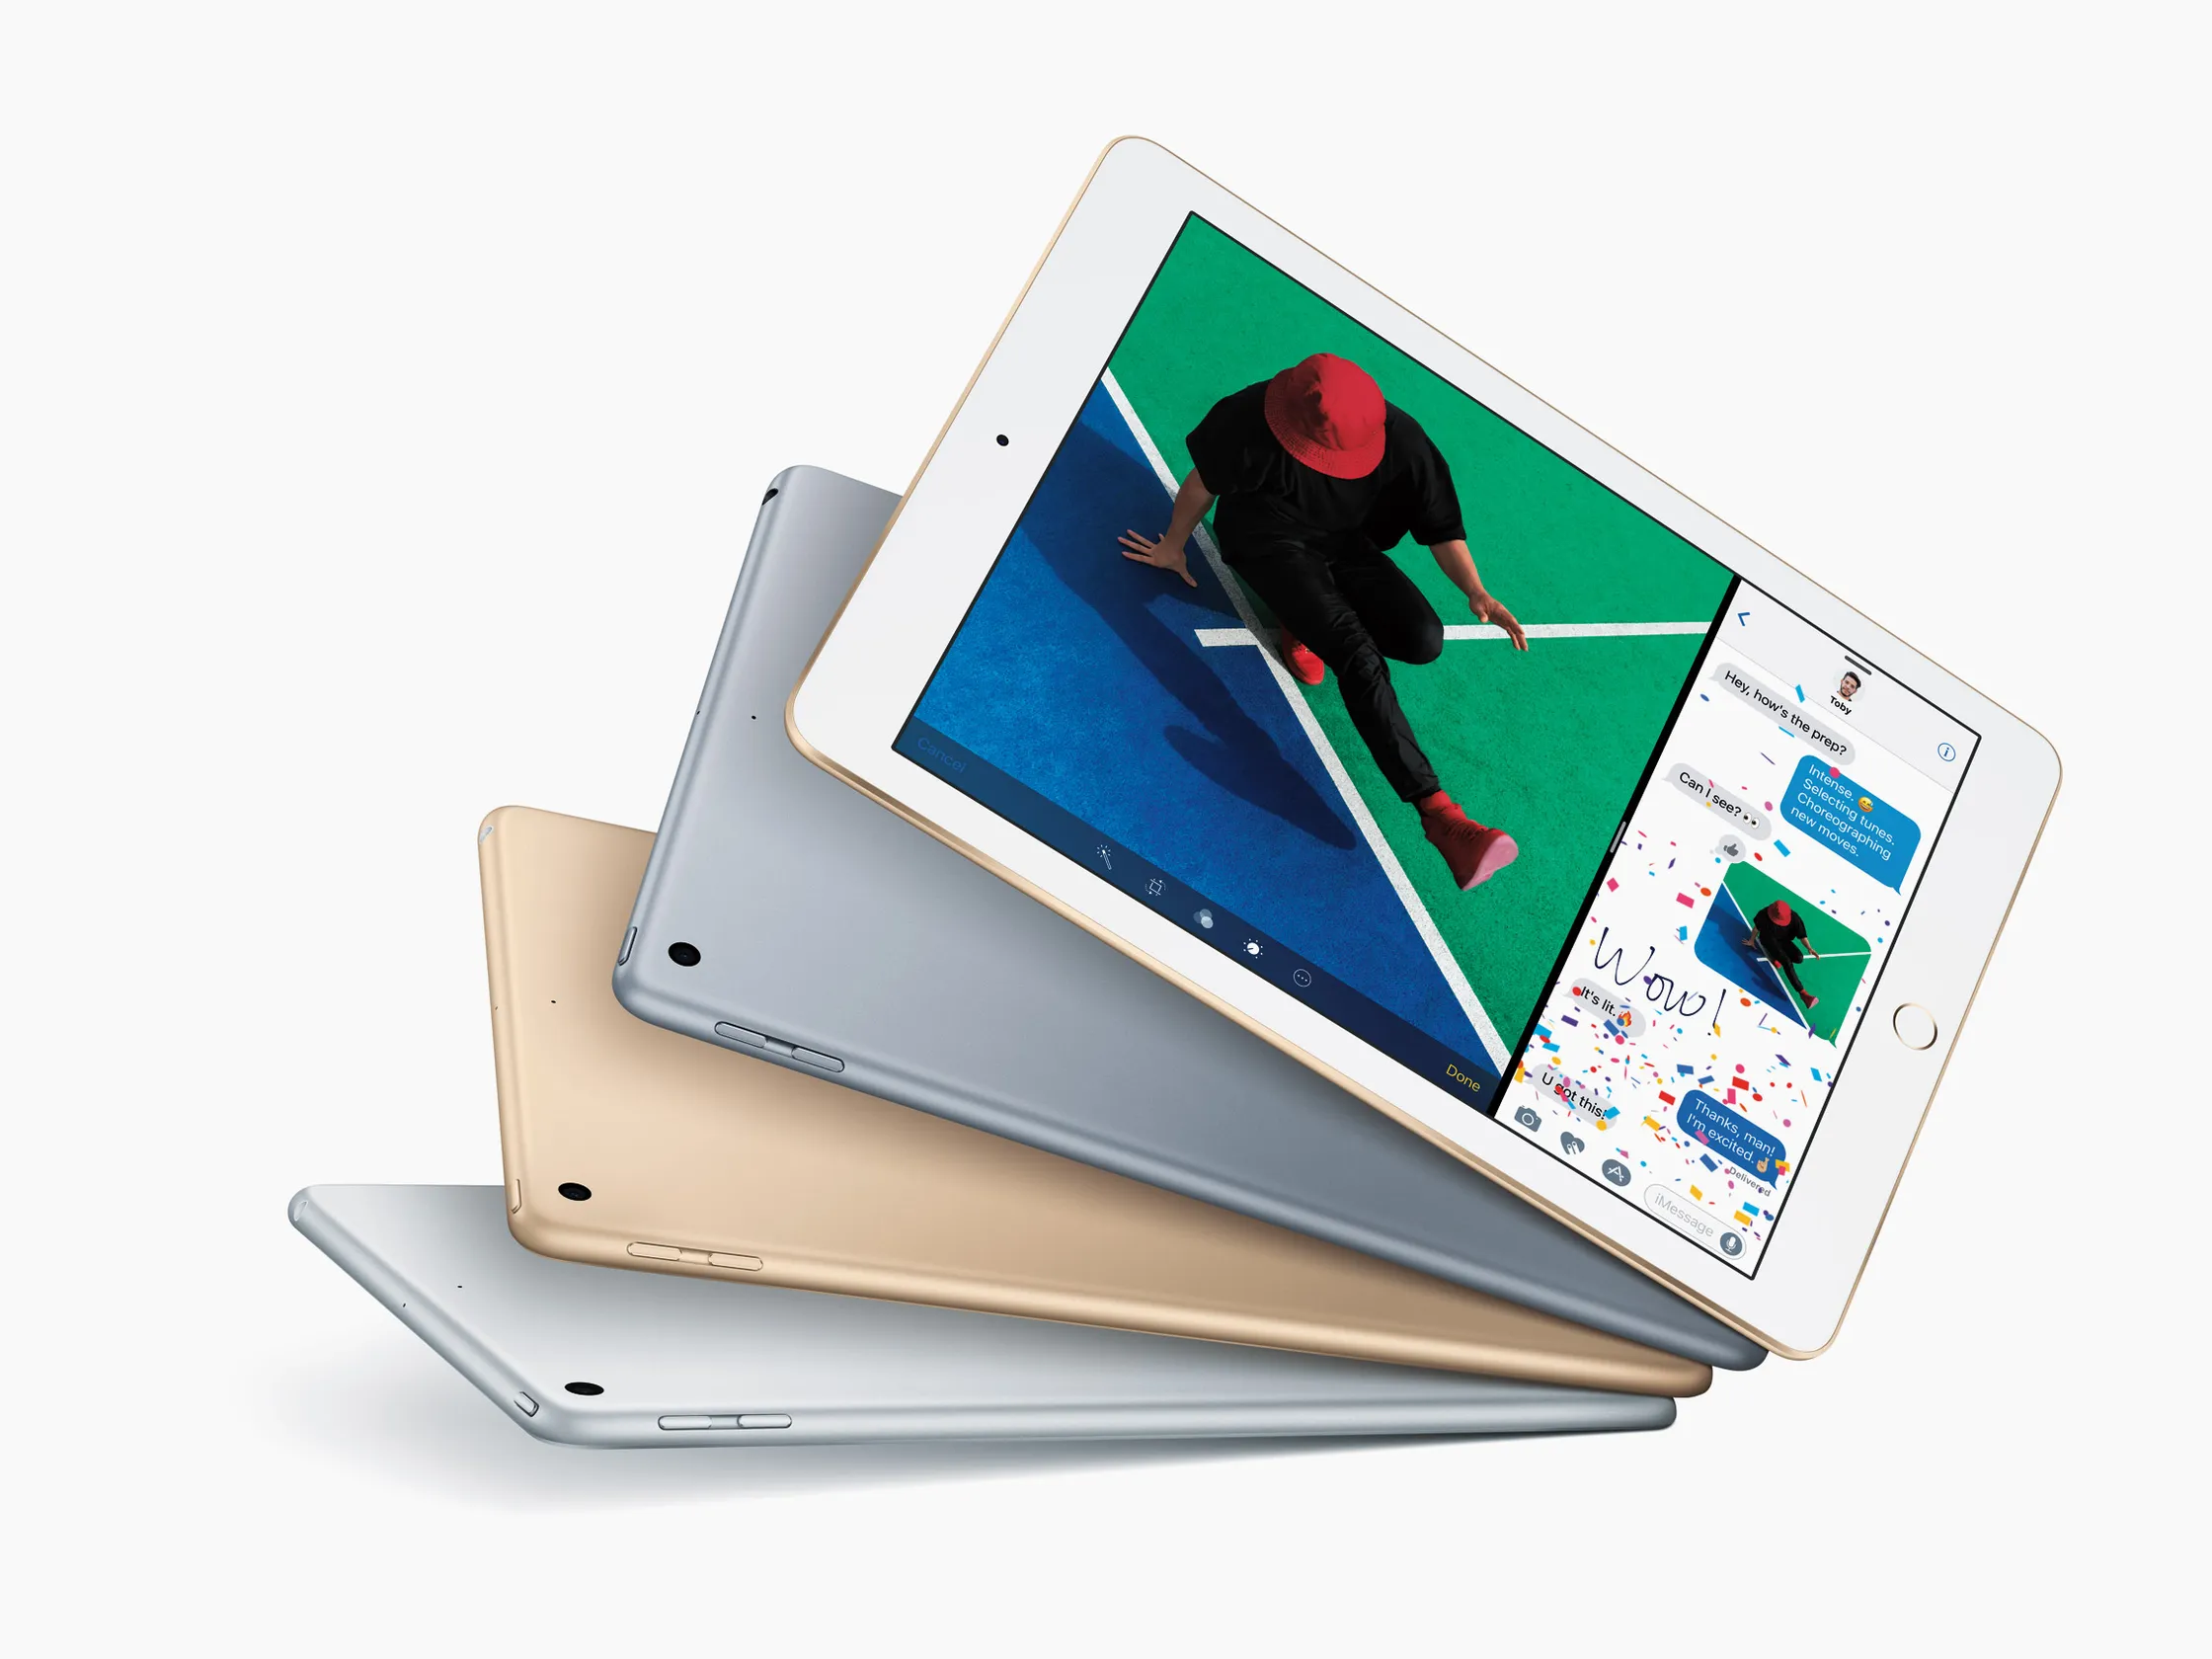 Informe-se sobre os custos de conserto da tela do iPad 7 e descubra opções acessíveis para manter seu dispositivo impecável.